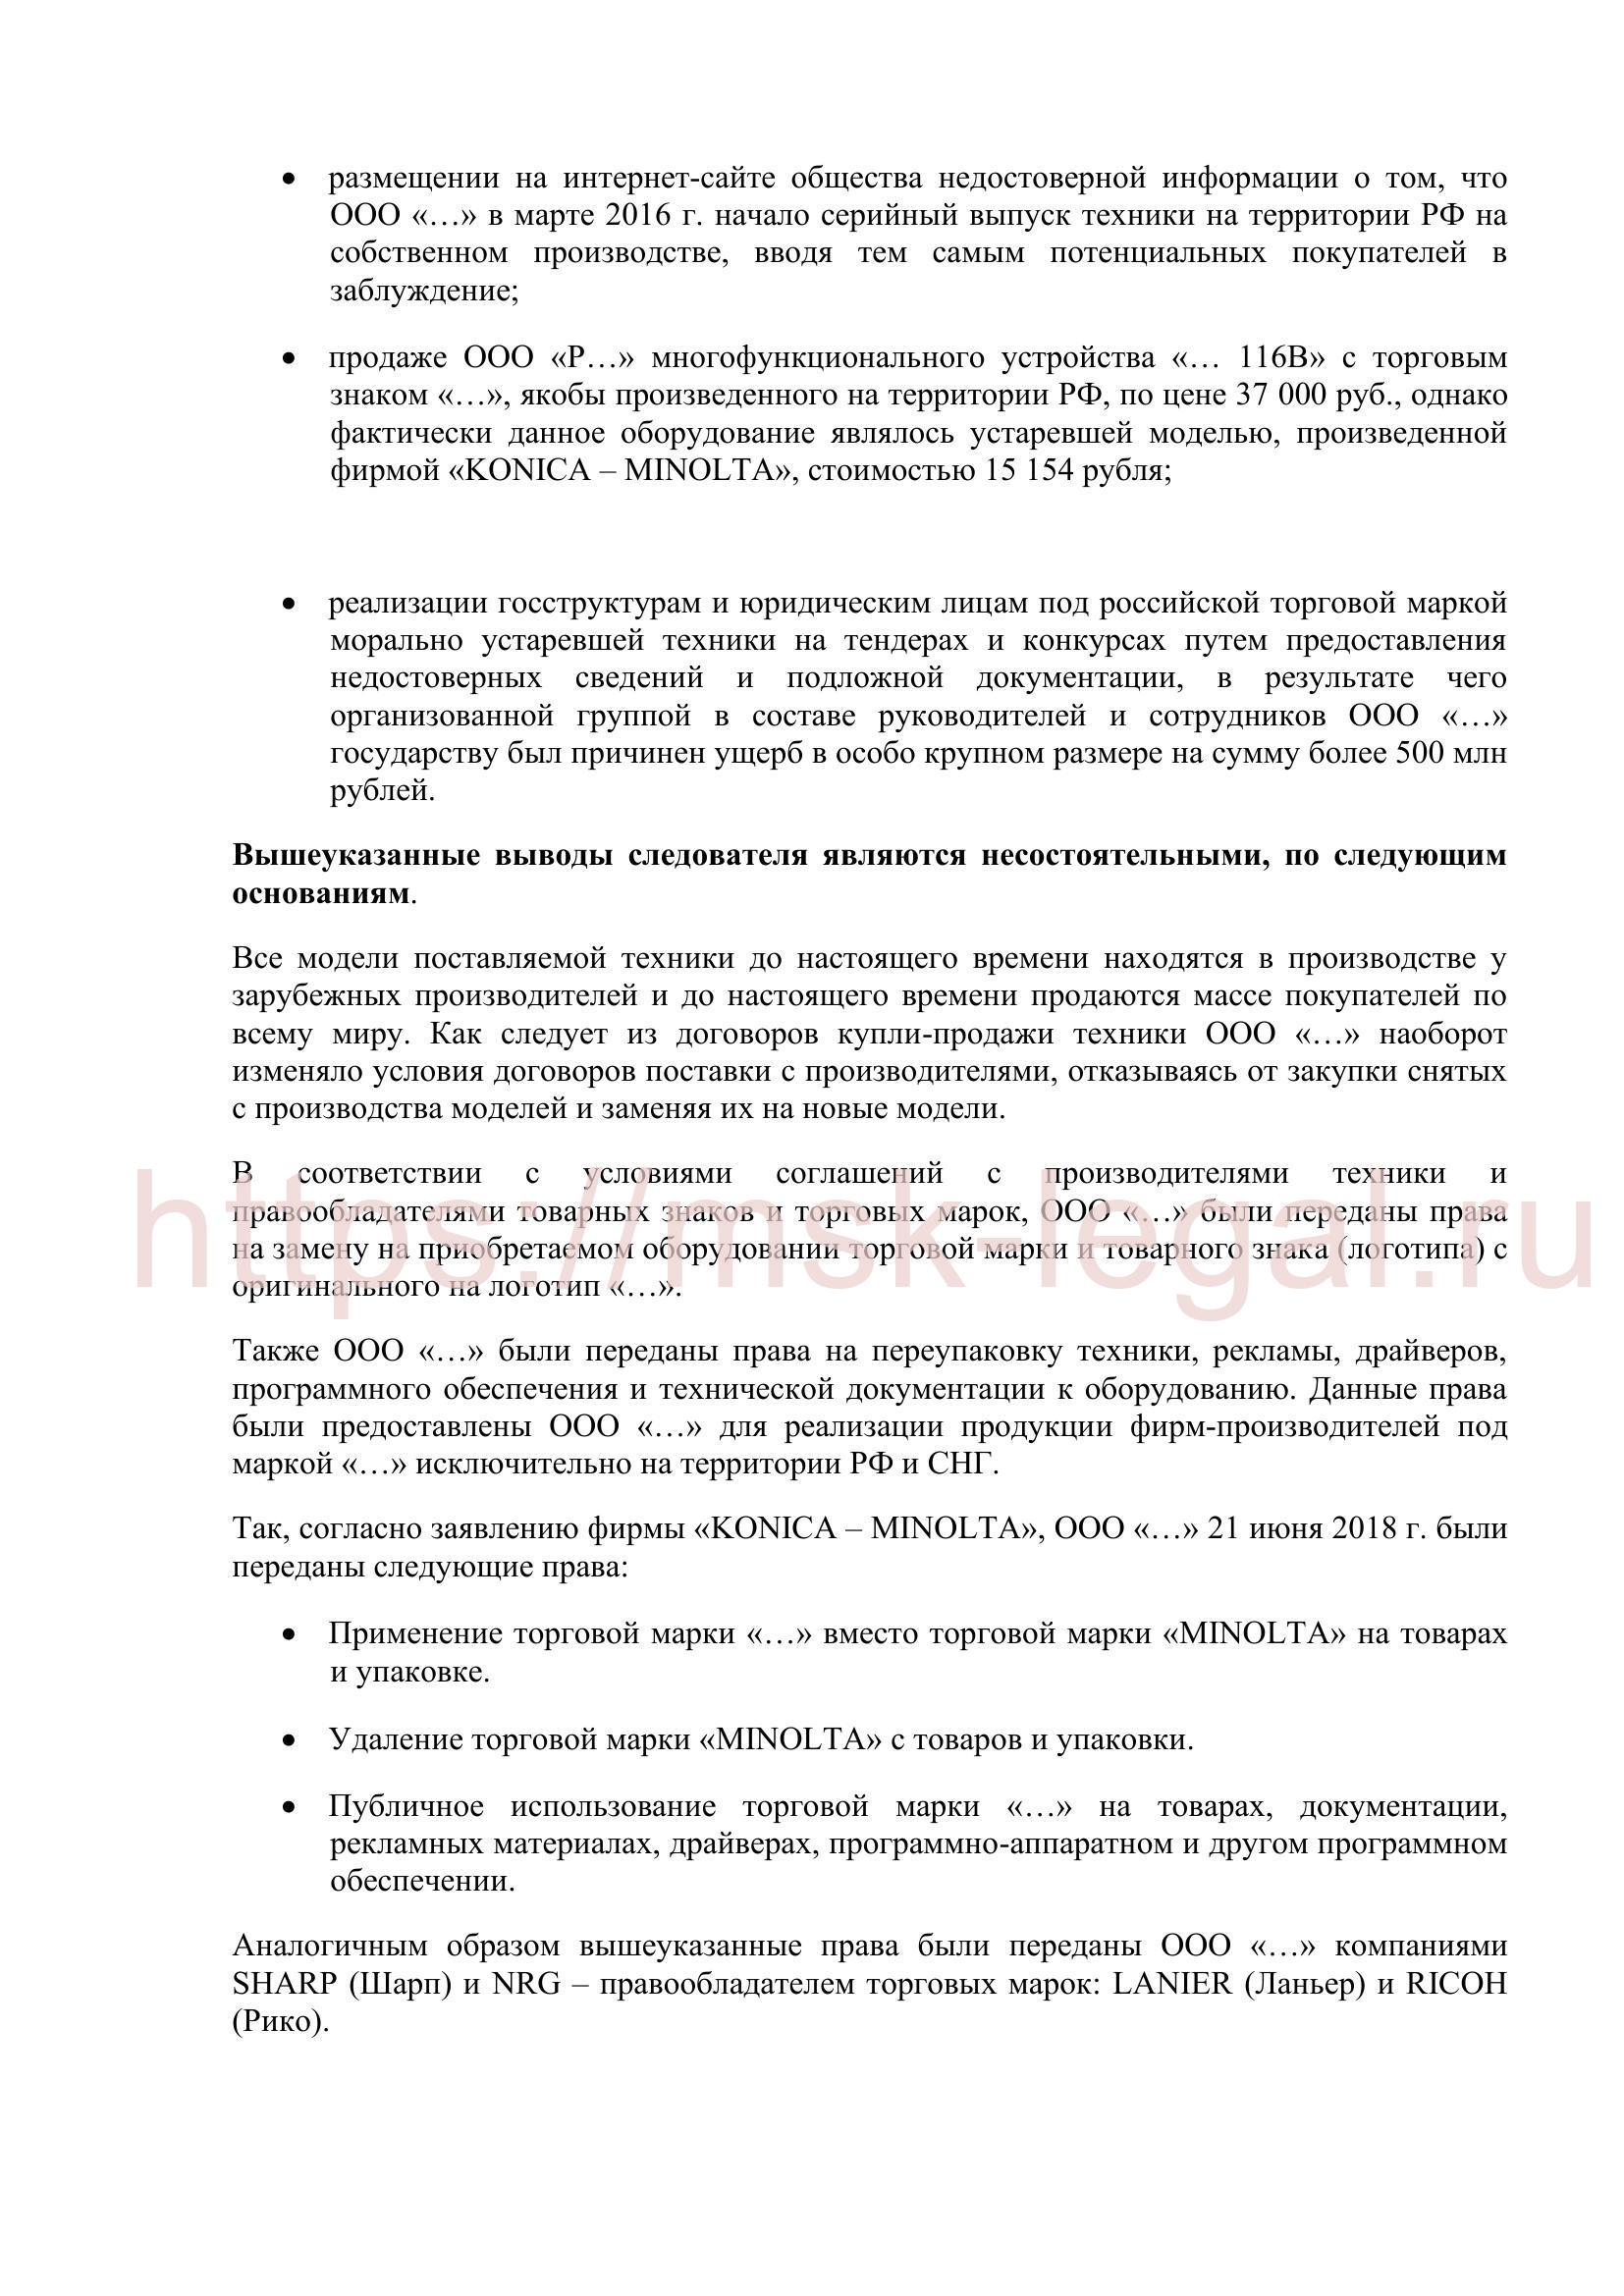 Пример жалобы по ст. 125 УПК РФ в суд